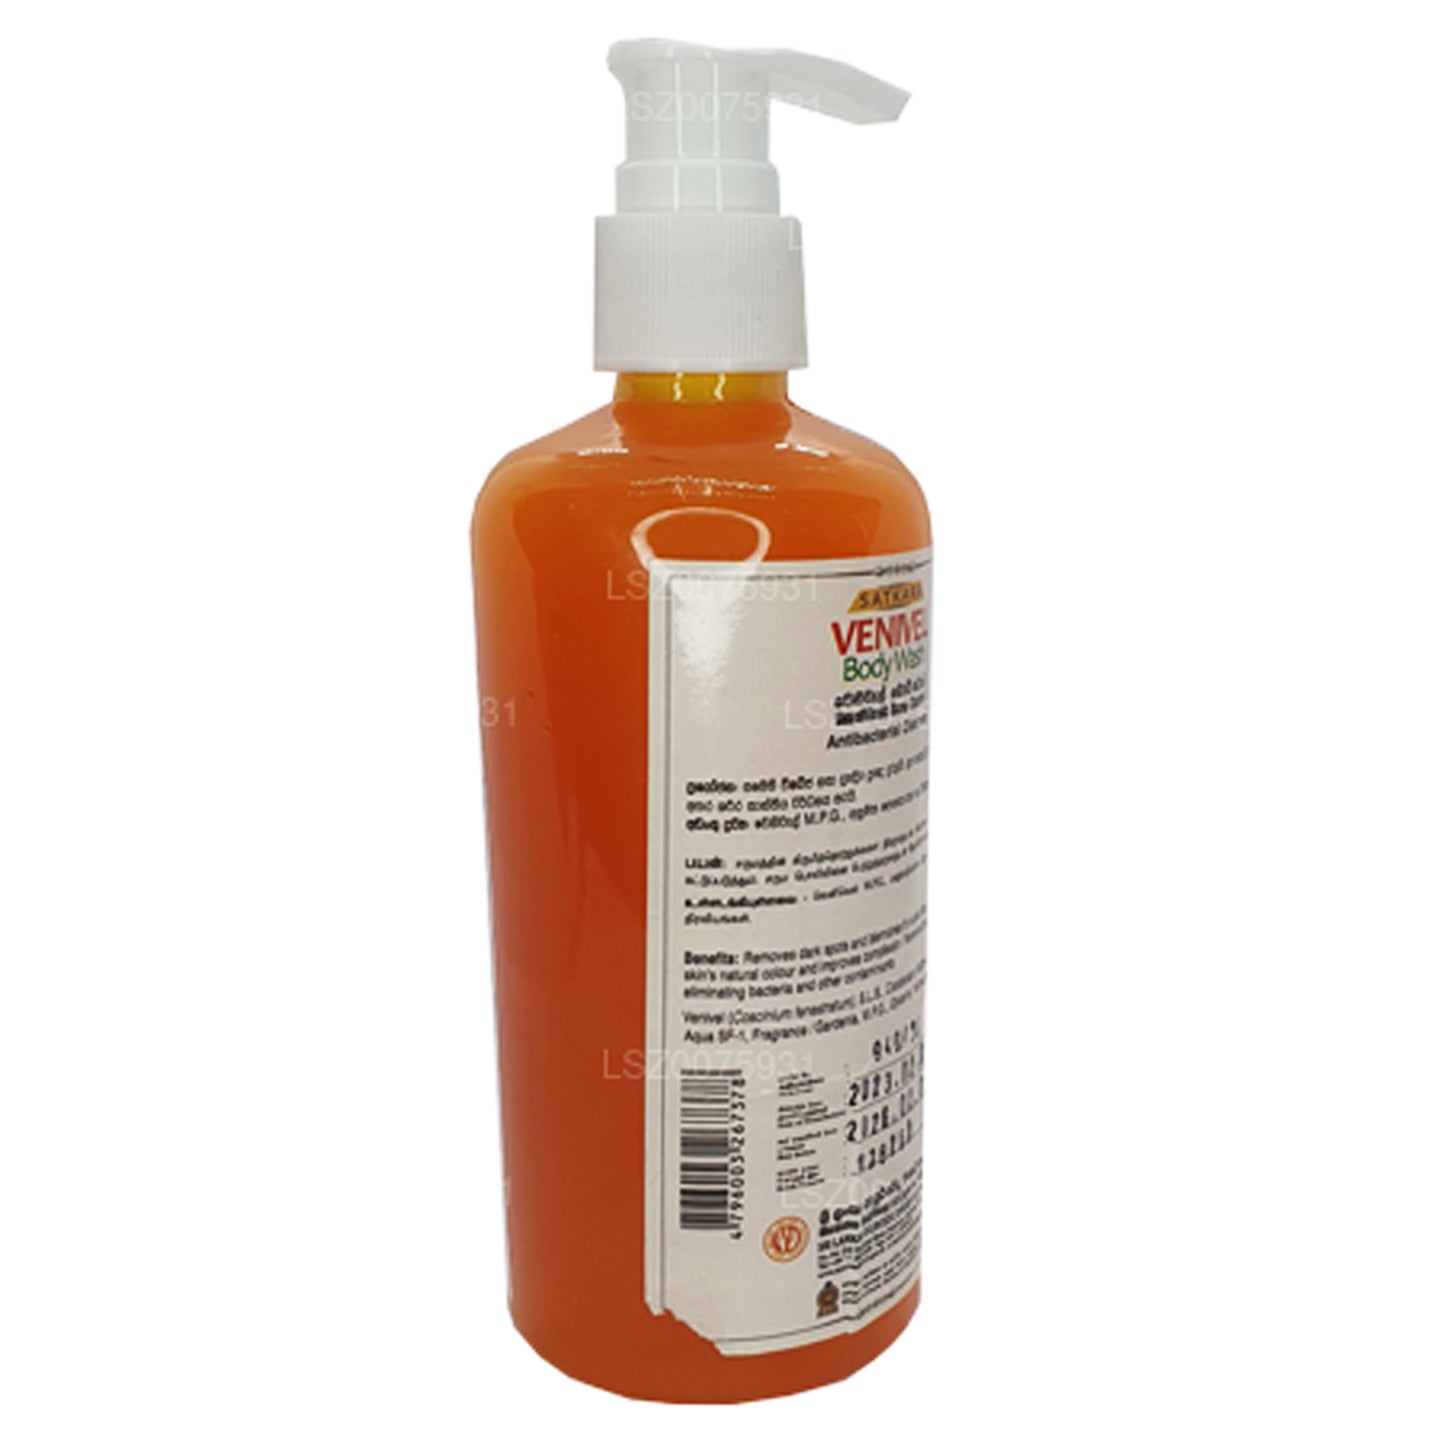 SLADC Venivel Płyn do mycia ciała (300ml)